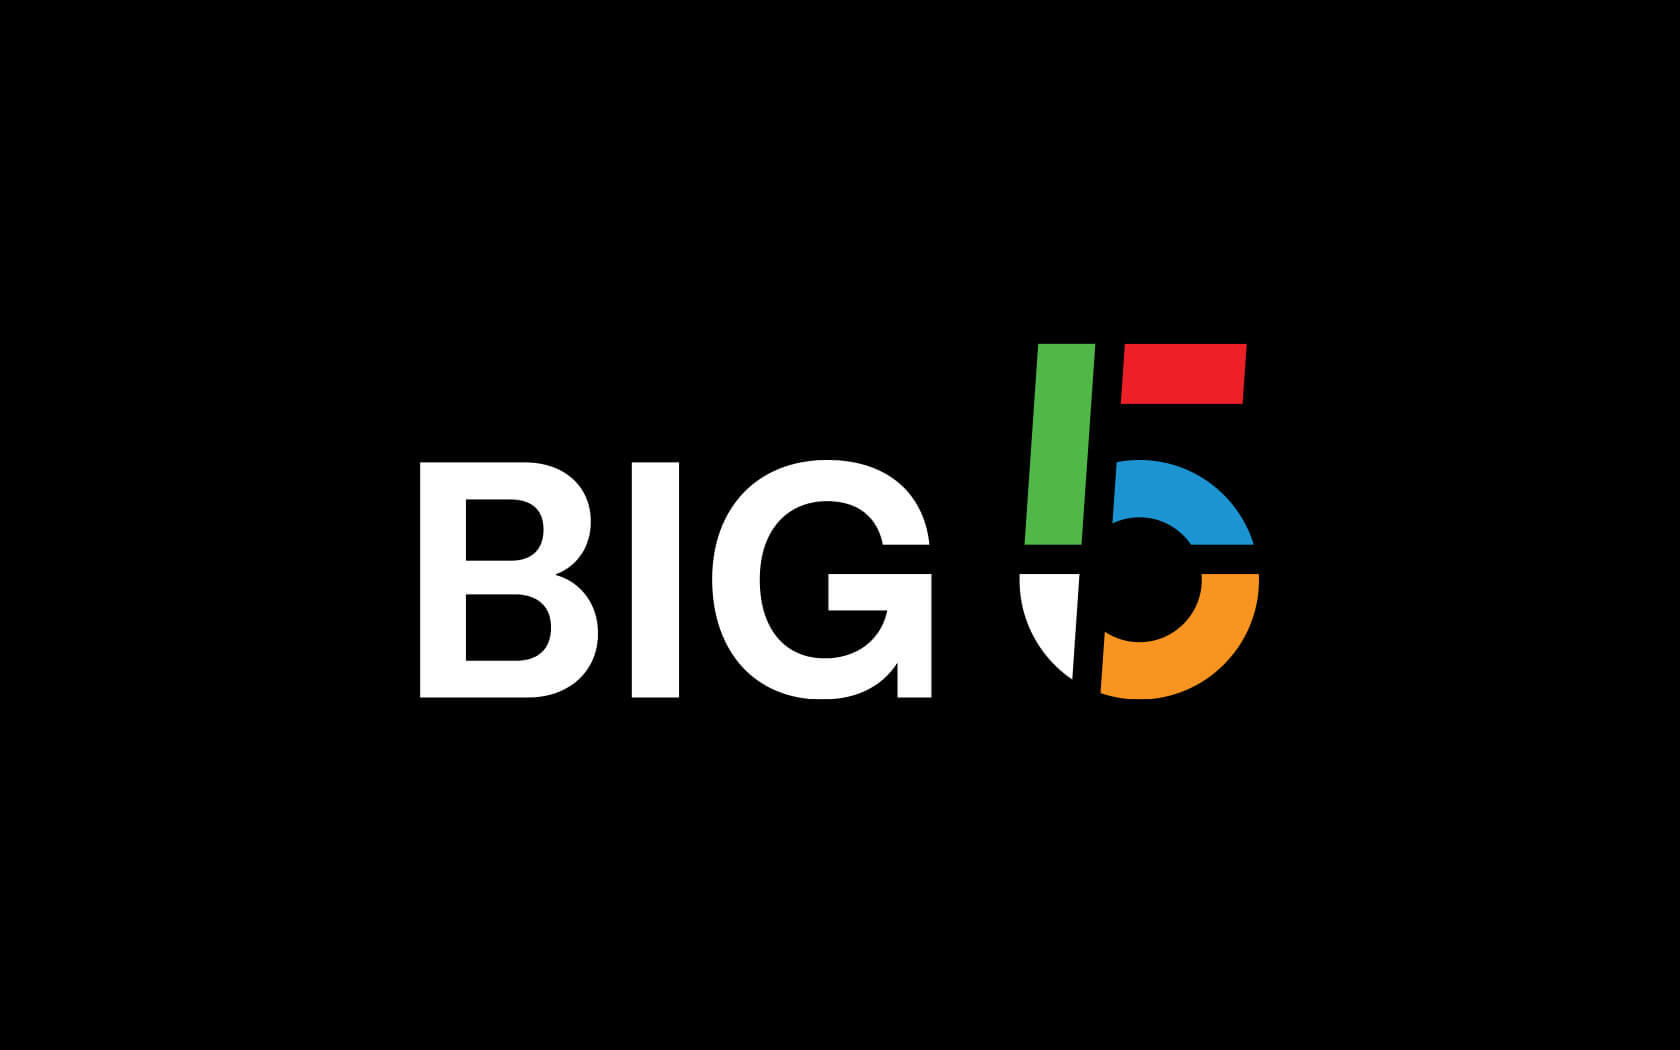 Big5. Reverse colour logo